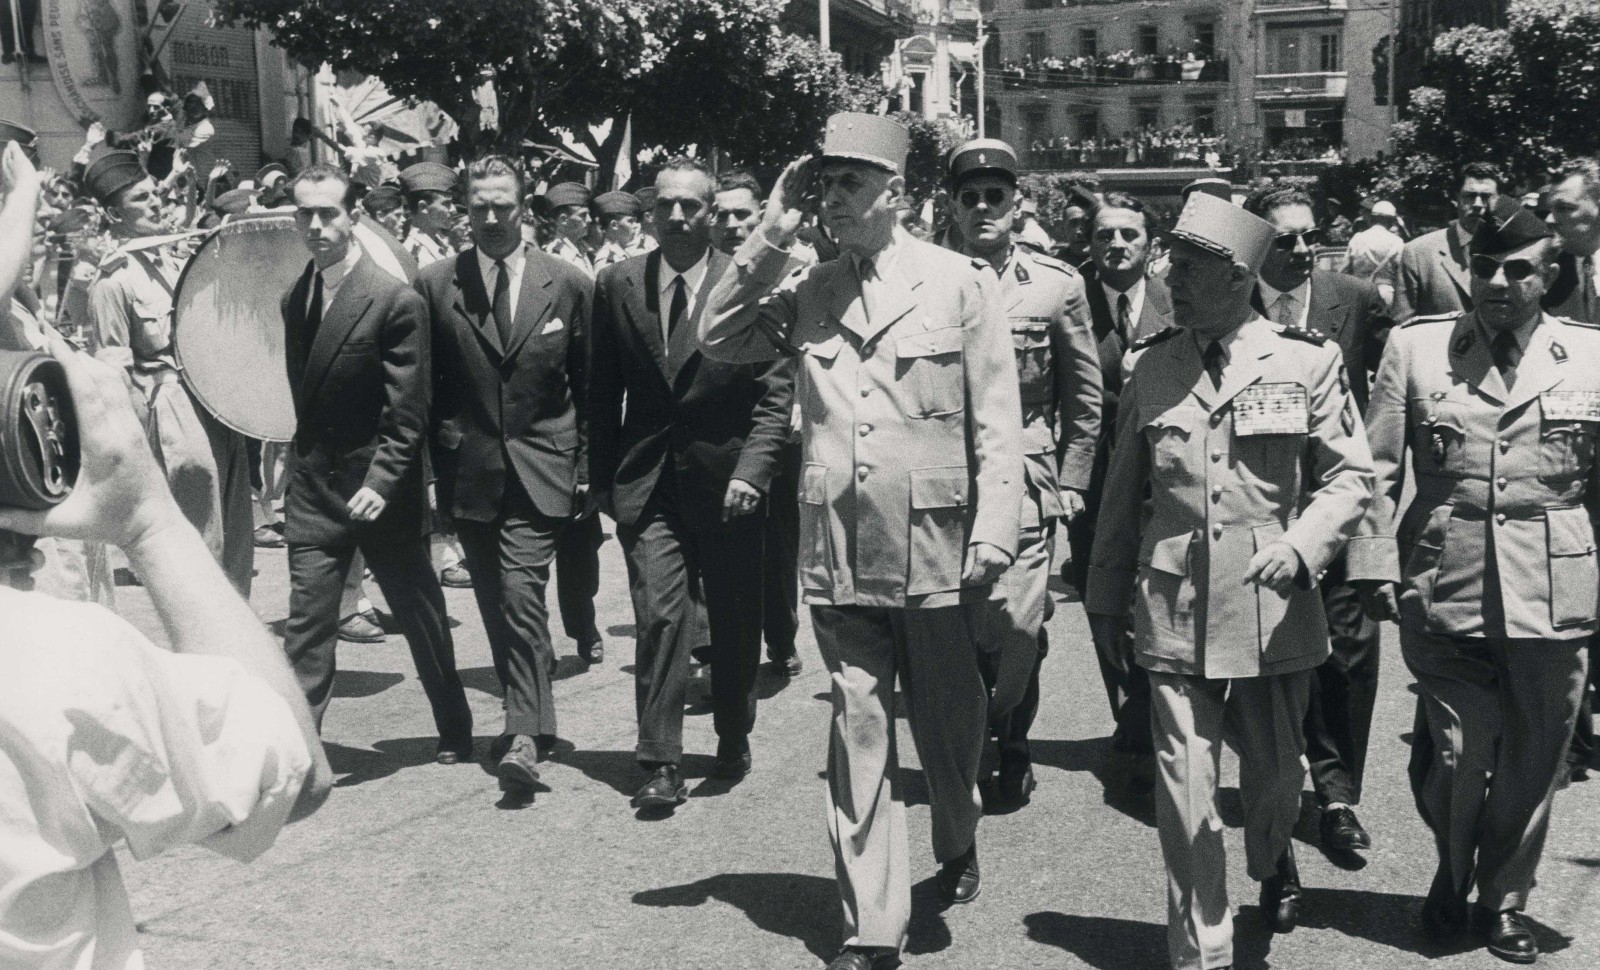 Algérie: Visite du General de Gaulle, juin 1958.
© DALMAS/ SIPA